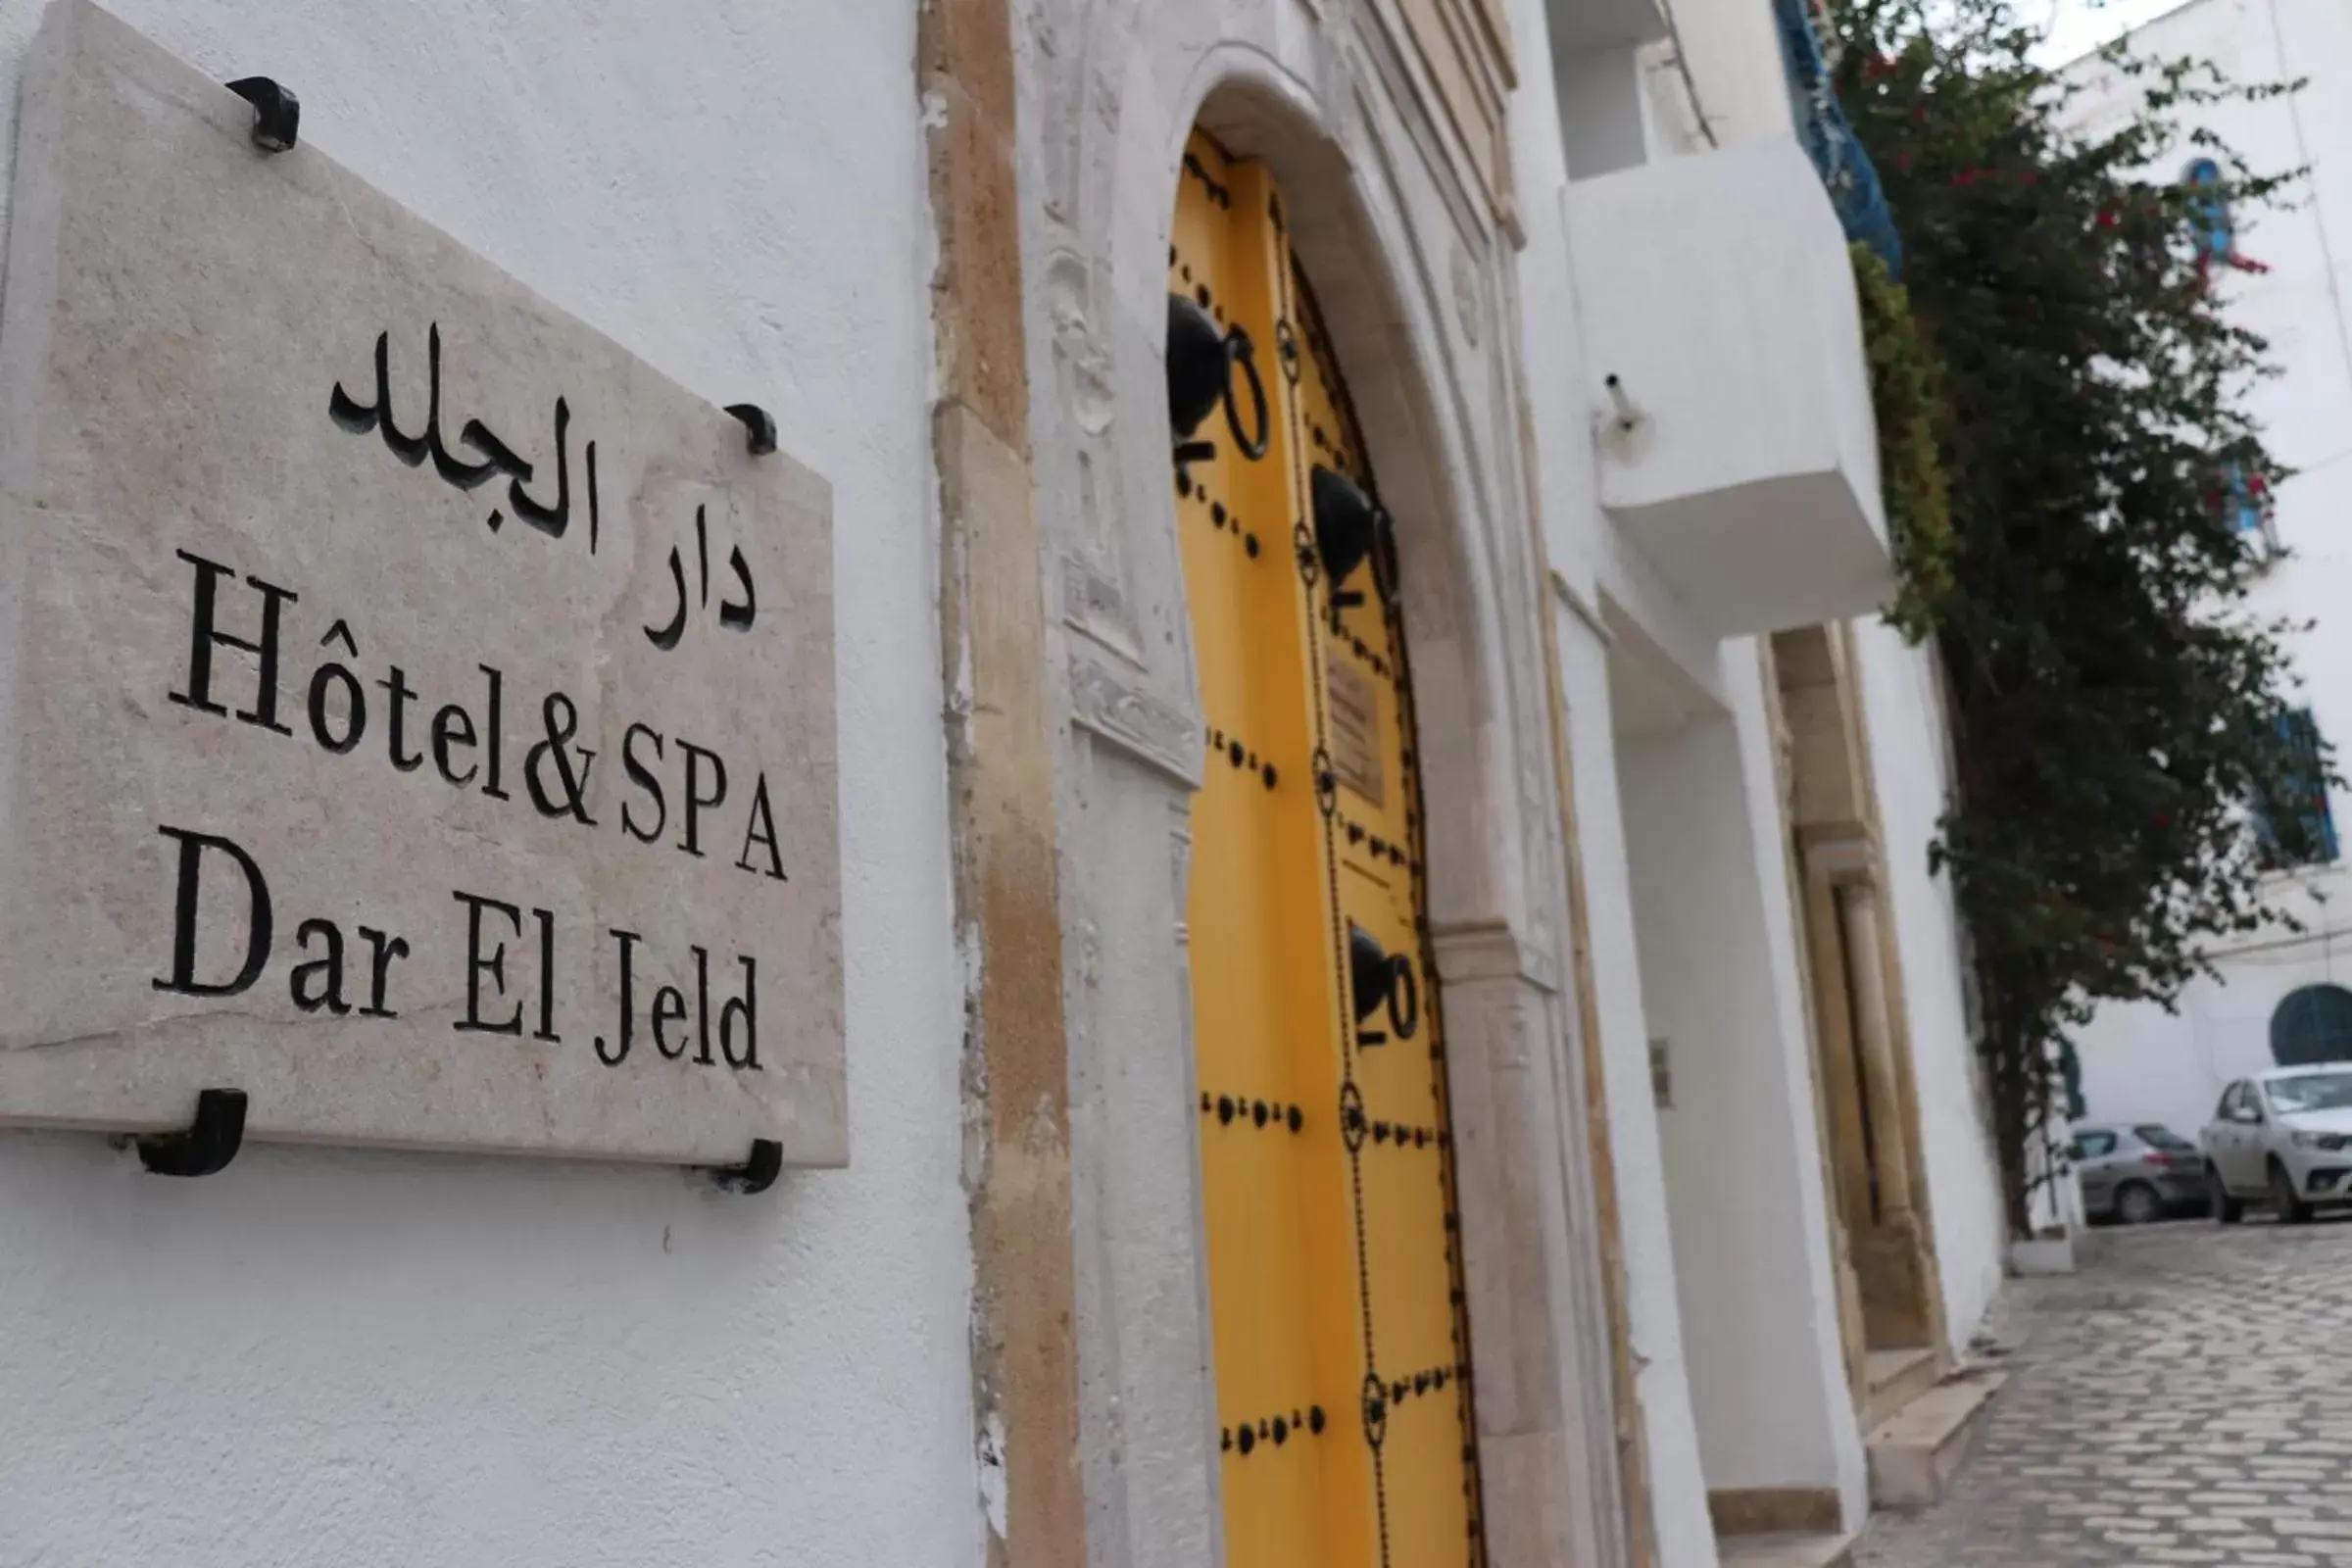 Facade/entrance in Dar El Jeld Hotel and Spa